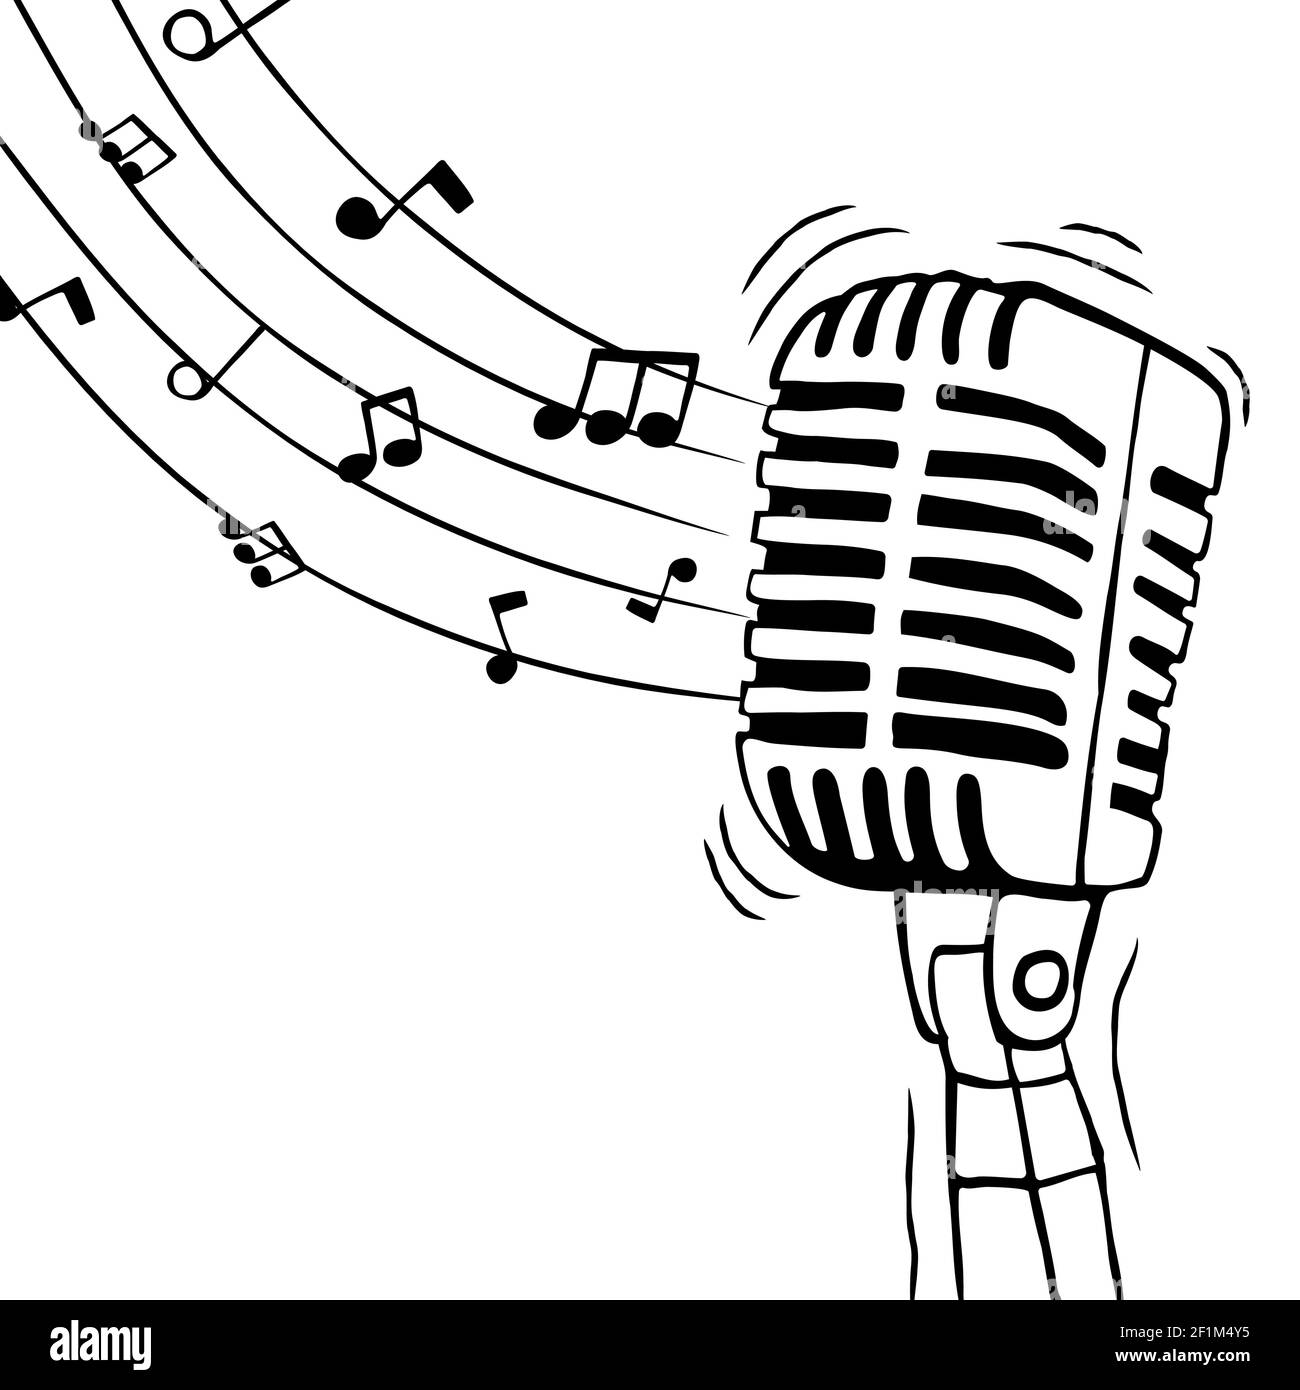 Musikmikrofon mit Noten Illustration für singende Veranstaltung oder Stimme Sound Konzept. Handgezeichnete Karikatur auf isoliertem Hintergrund. Stock Vektor